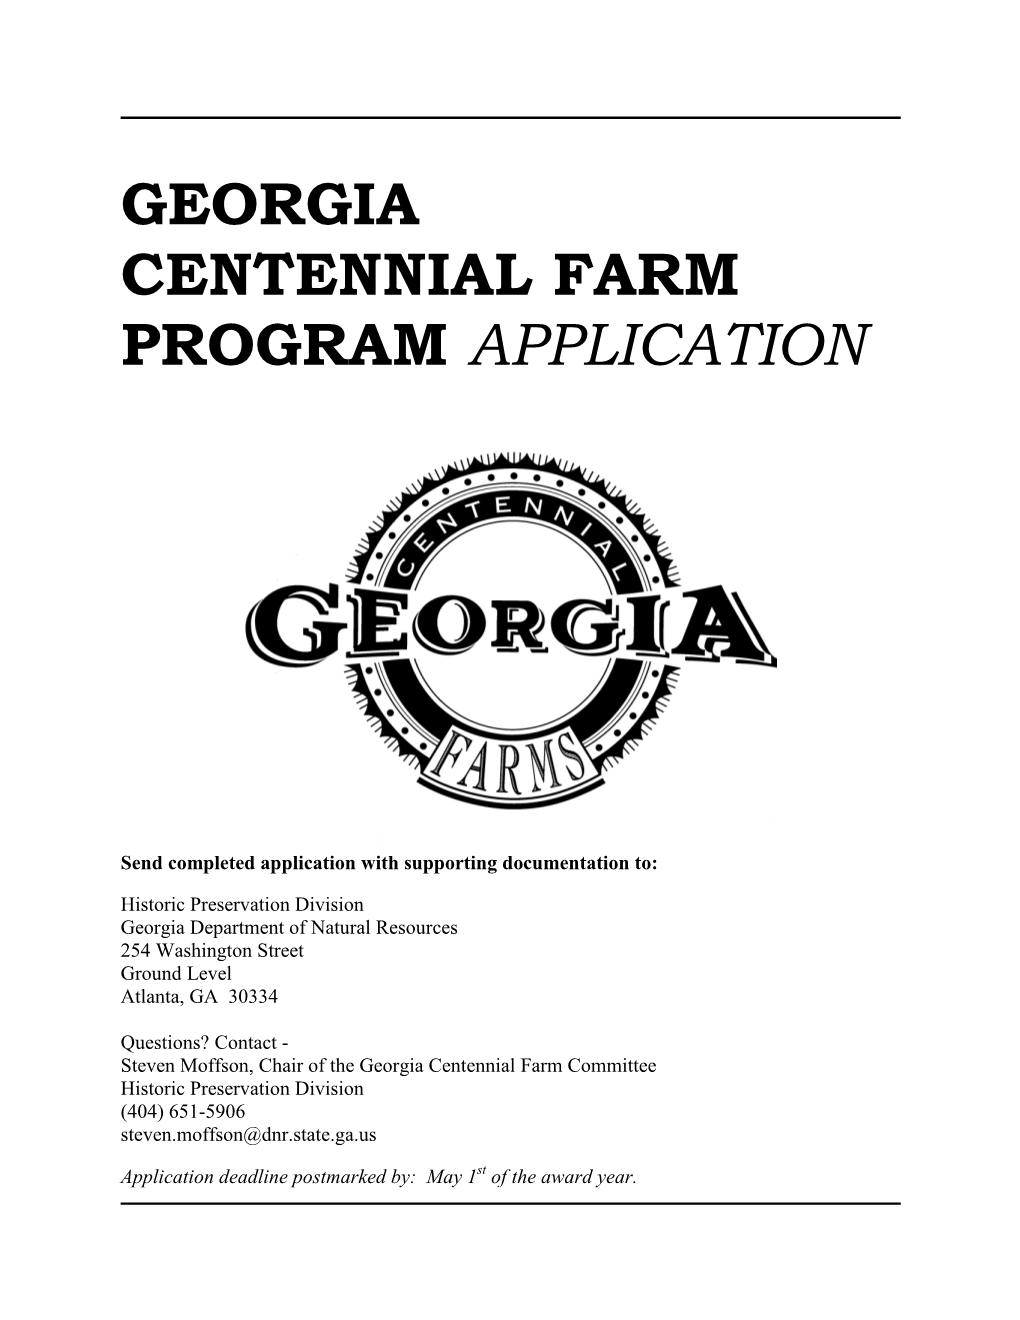 Georgia Centennial Farm Program Application